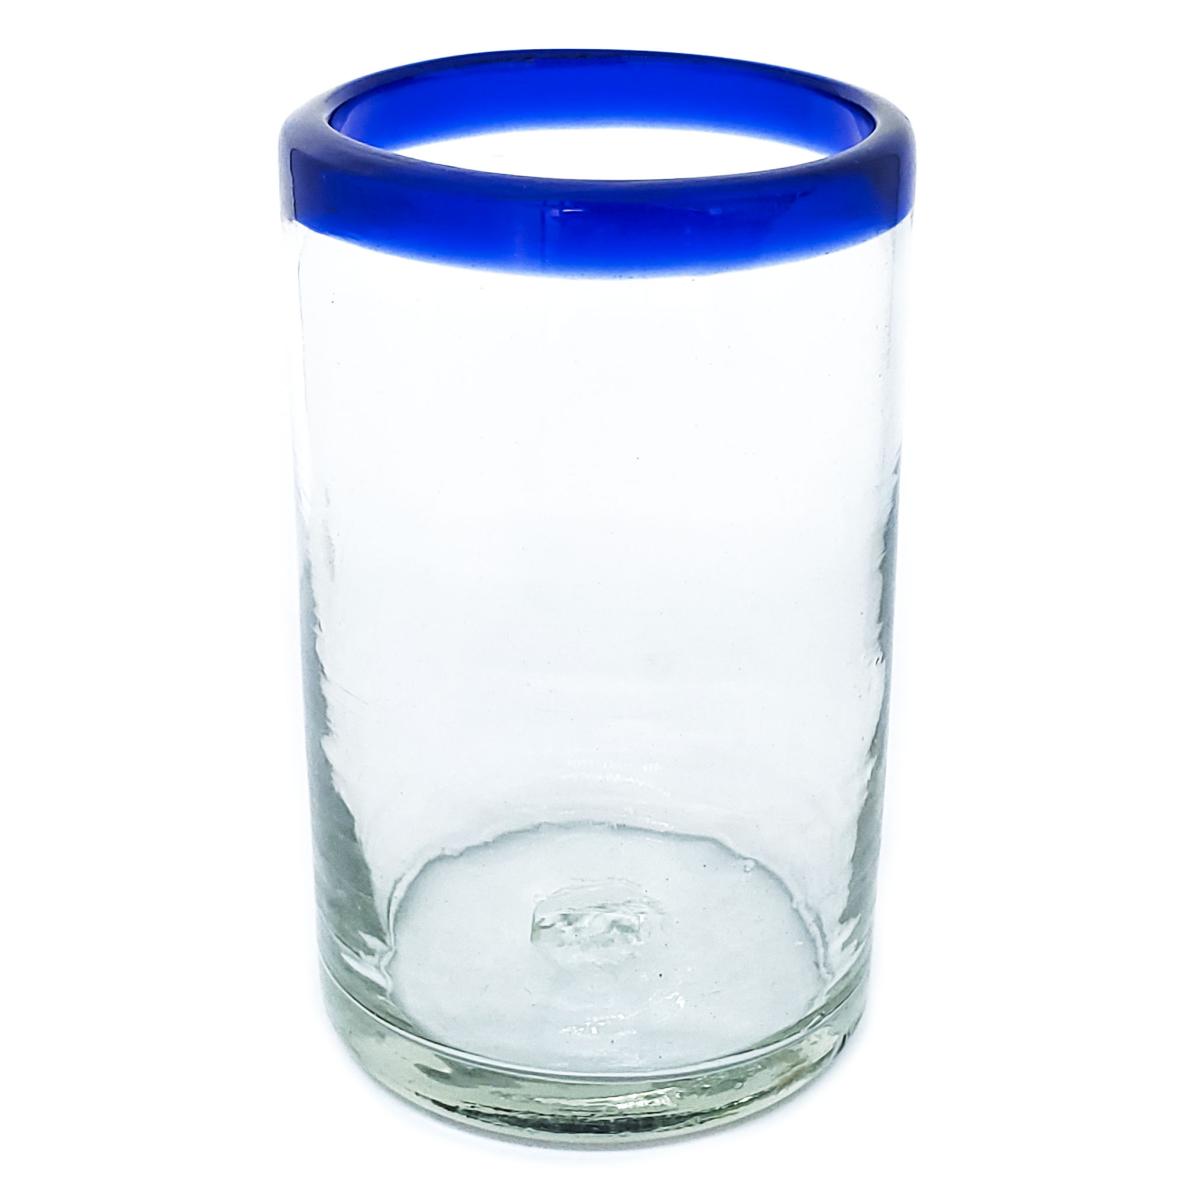 Ofertas / vasos grandes con borde azul cobalto / Éstos artesanales vasos le darán un toque clásico a su bebida favorita.